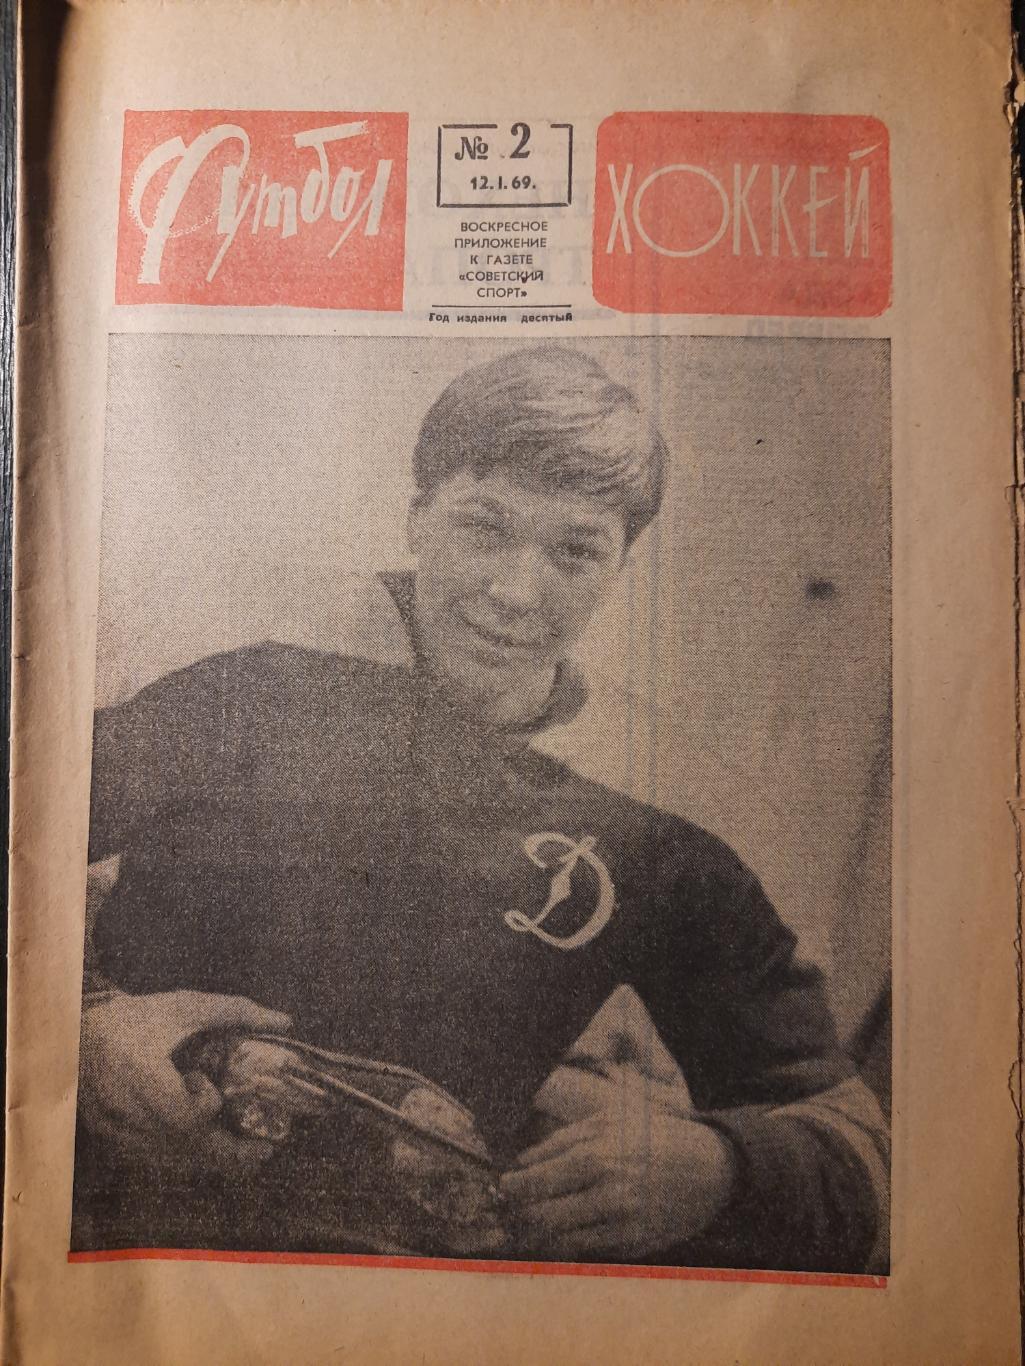 еженедельник футбол-хоккей #2,1969